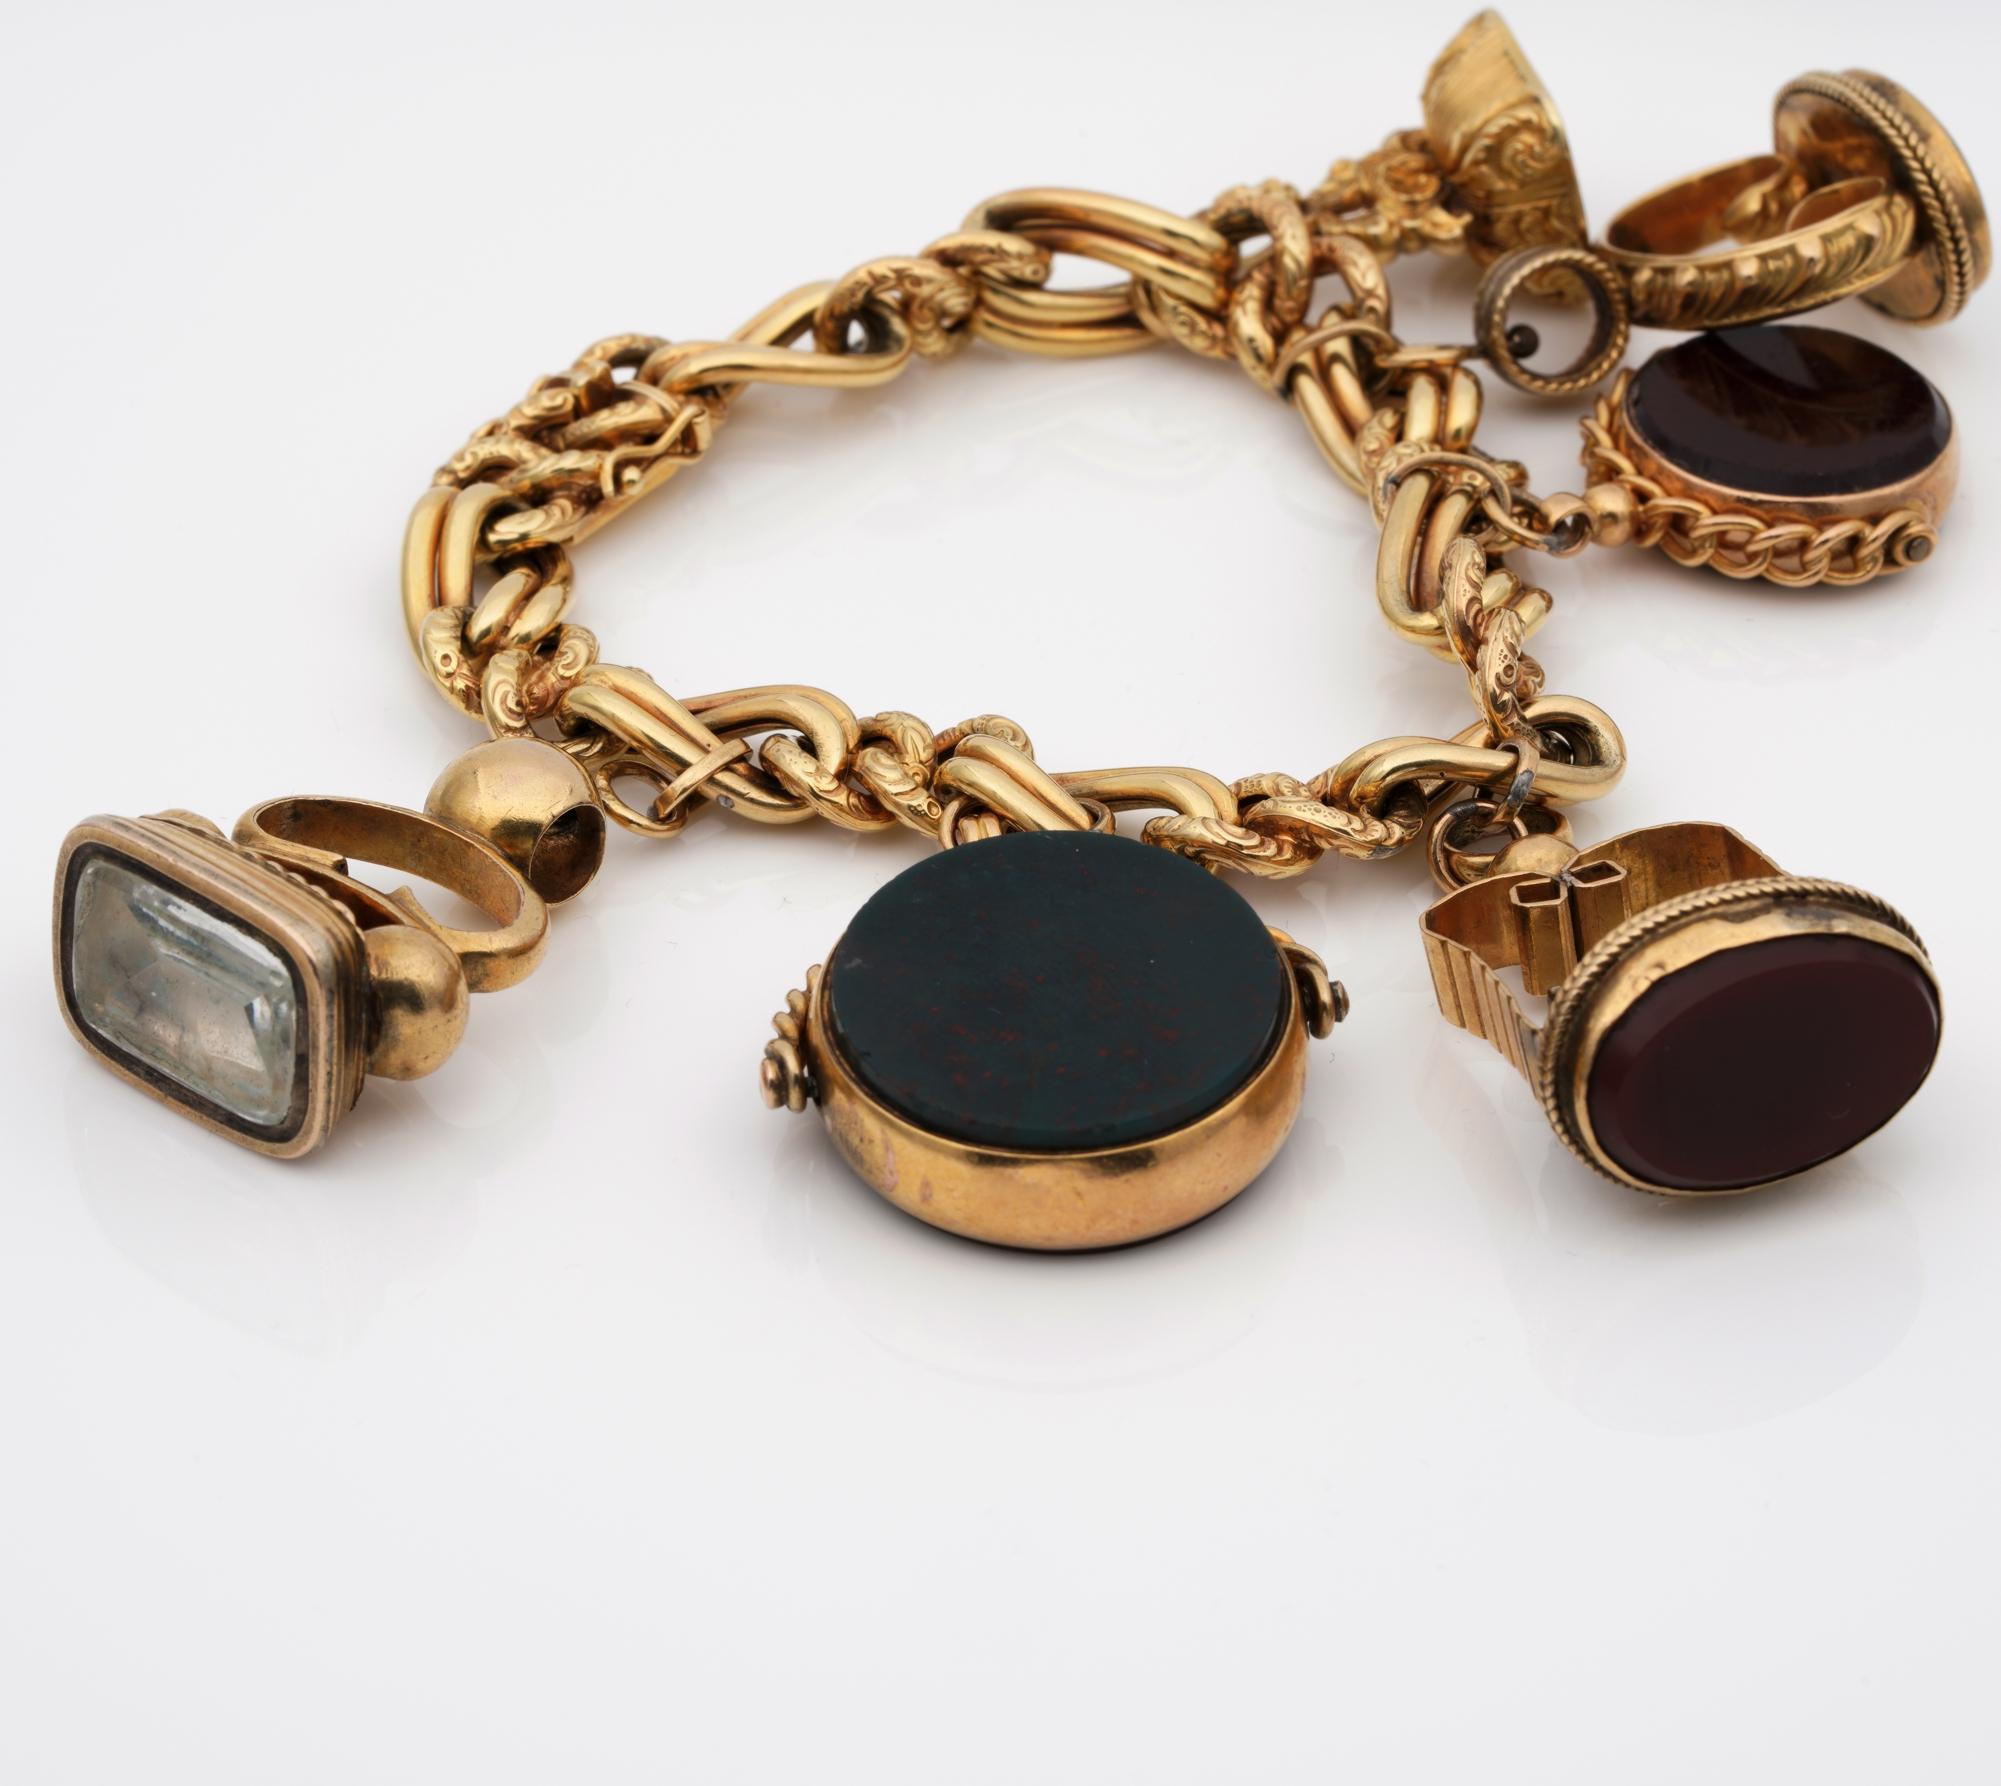 Edwardian Antique Six Fobs Charm Bracelet For Sale